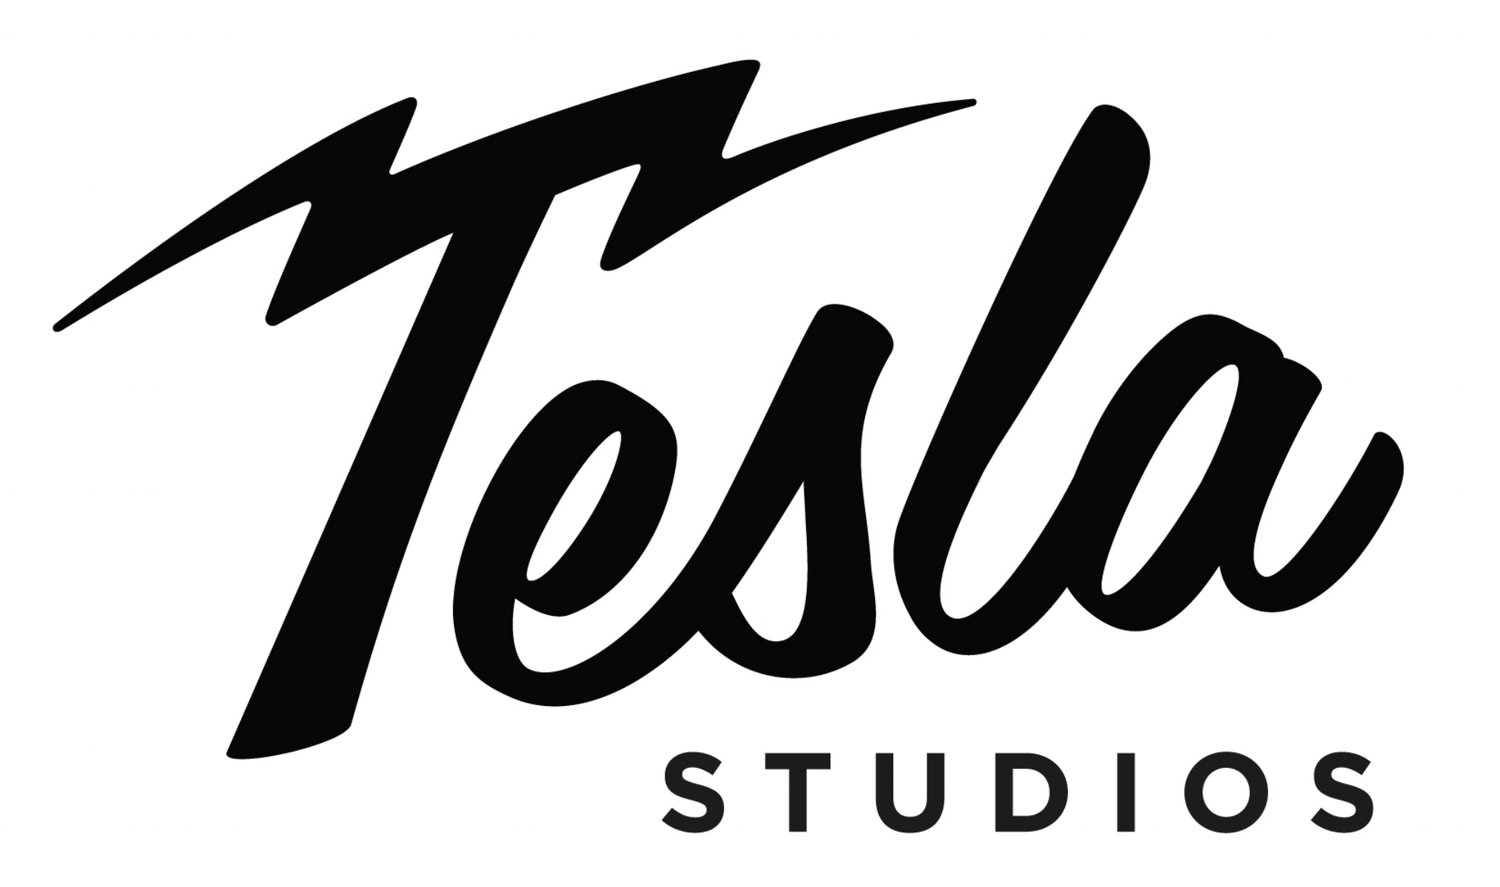 Tesla Studios